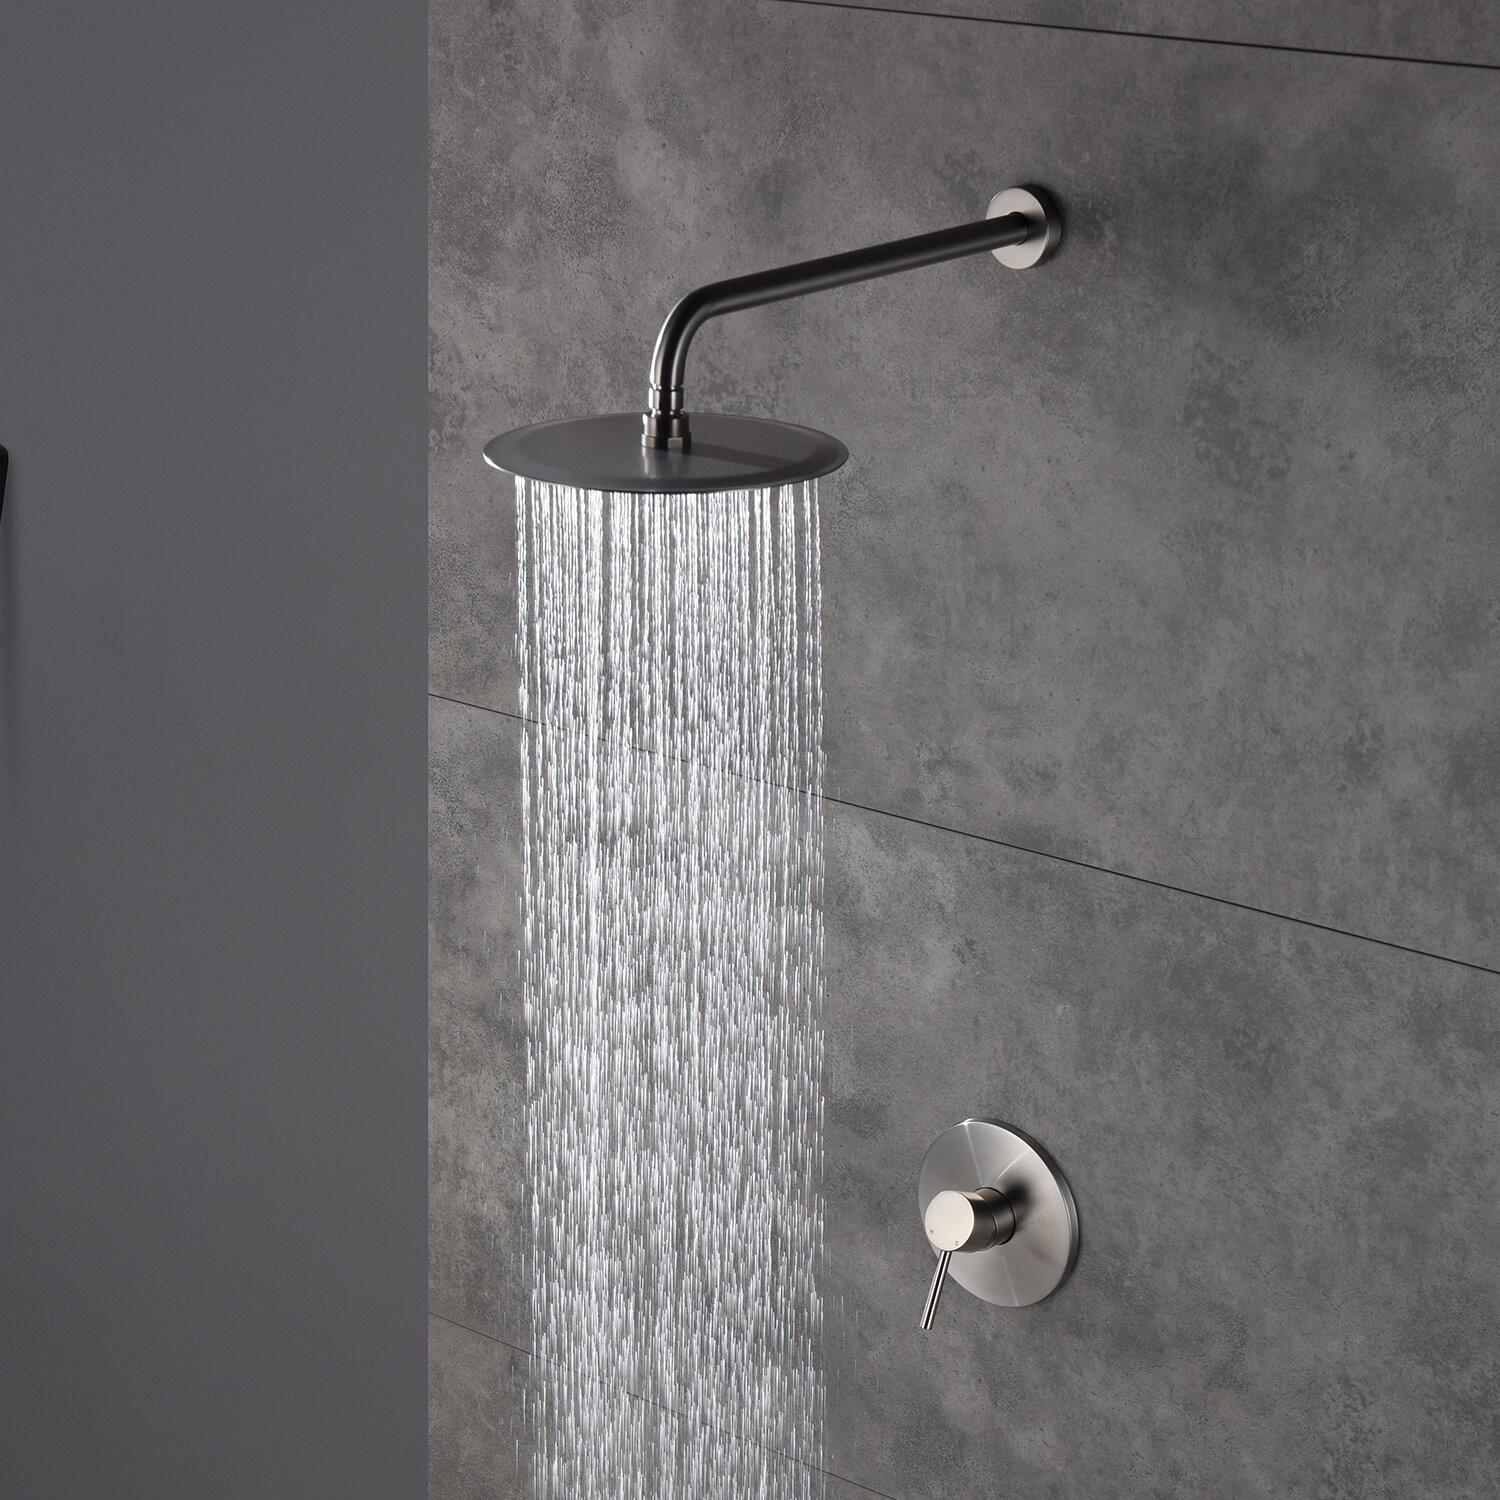 Sistema de ducha y bañera con presión equilibrada de lluvia y montaje en pared Aquacubic con válvula empotrada